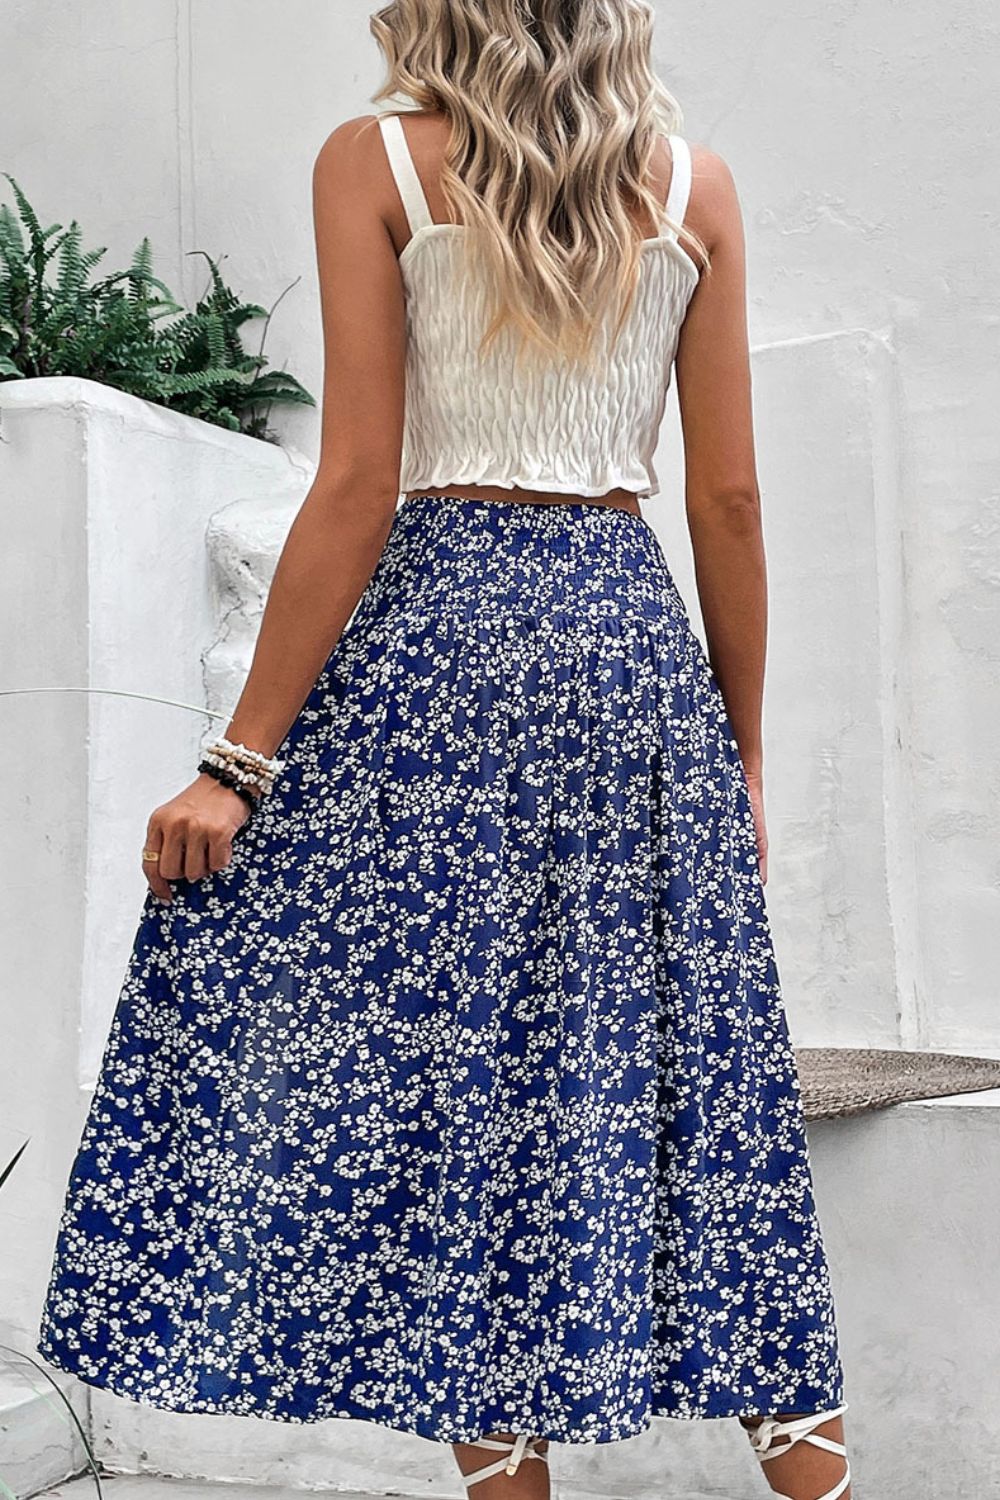 Ditsy Floral Slit High Waist Skirt-Skirt-Floral Skirt, Hundredth, Patterned Skirt, Ship From Overseas, Skirt-Floral-S-[option4]-[option5]-[option6]-Womens-USA-Clothing-Boutique-Shop-Online-Clothes Minded